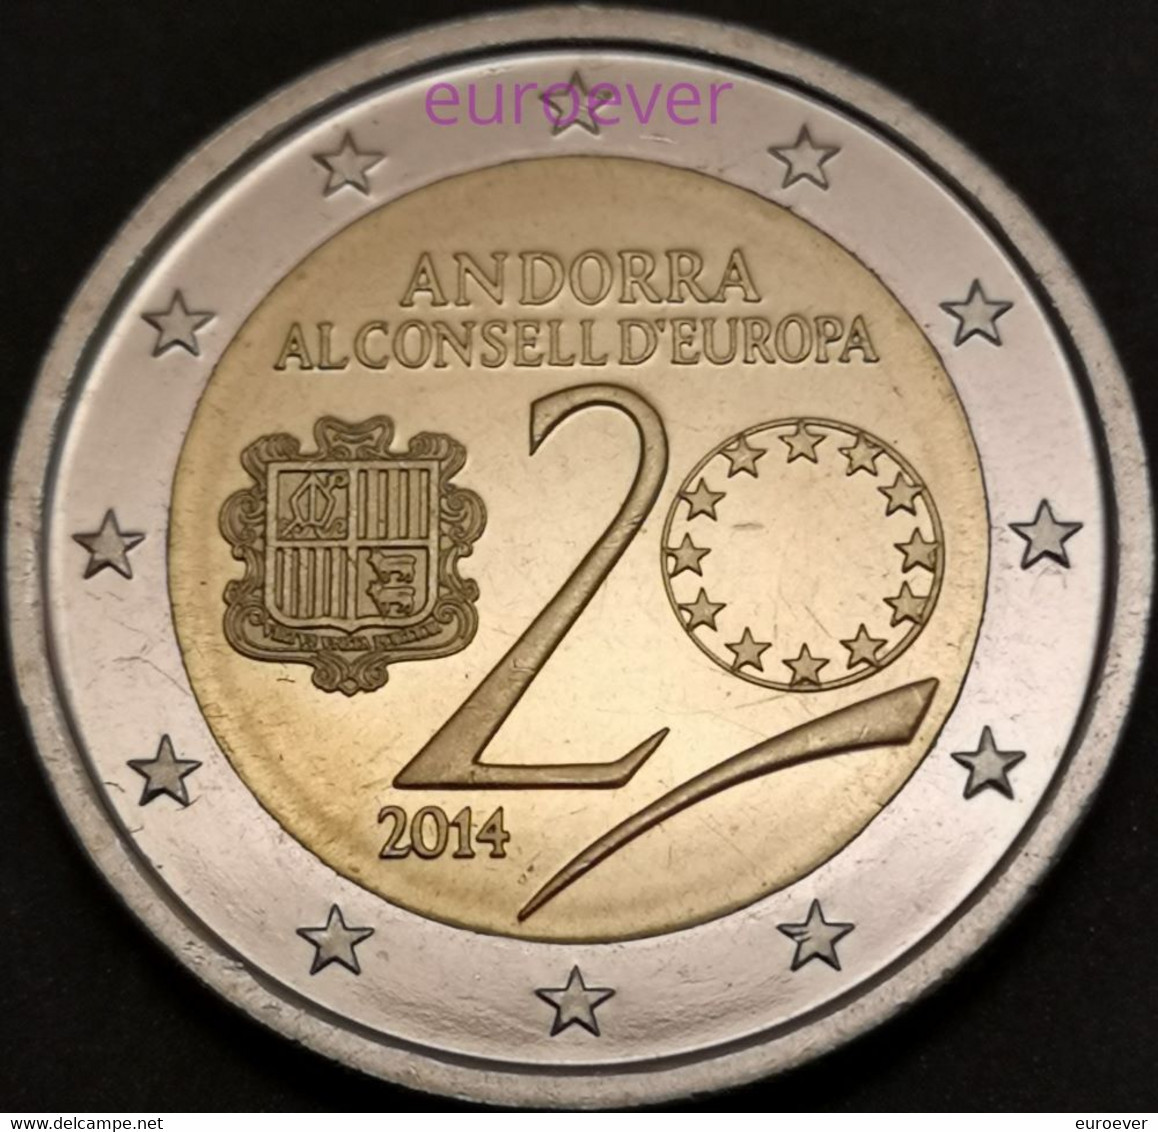 2 Euro Gedenkmünze 2014 Nr. 27 - Andorra - Mitgliedschaft Im Europarat UNC Aus BU Coincard - Andorra